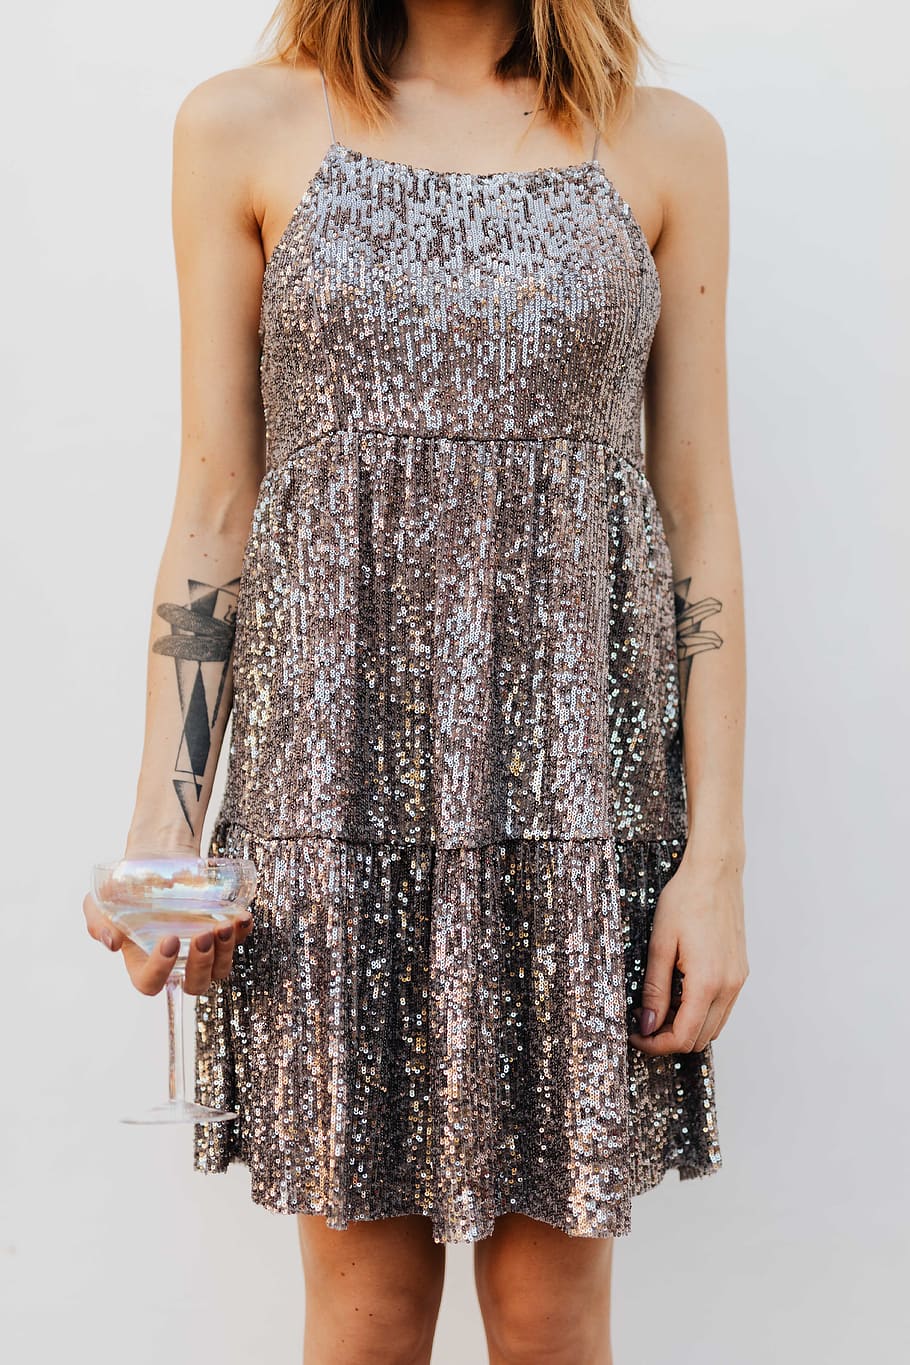 vidro, copo de vinho, vinho branco, tatuagem, lantejoulas, fundo branco, vestido, loira, mulher, champanhe